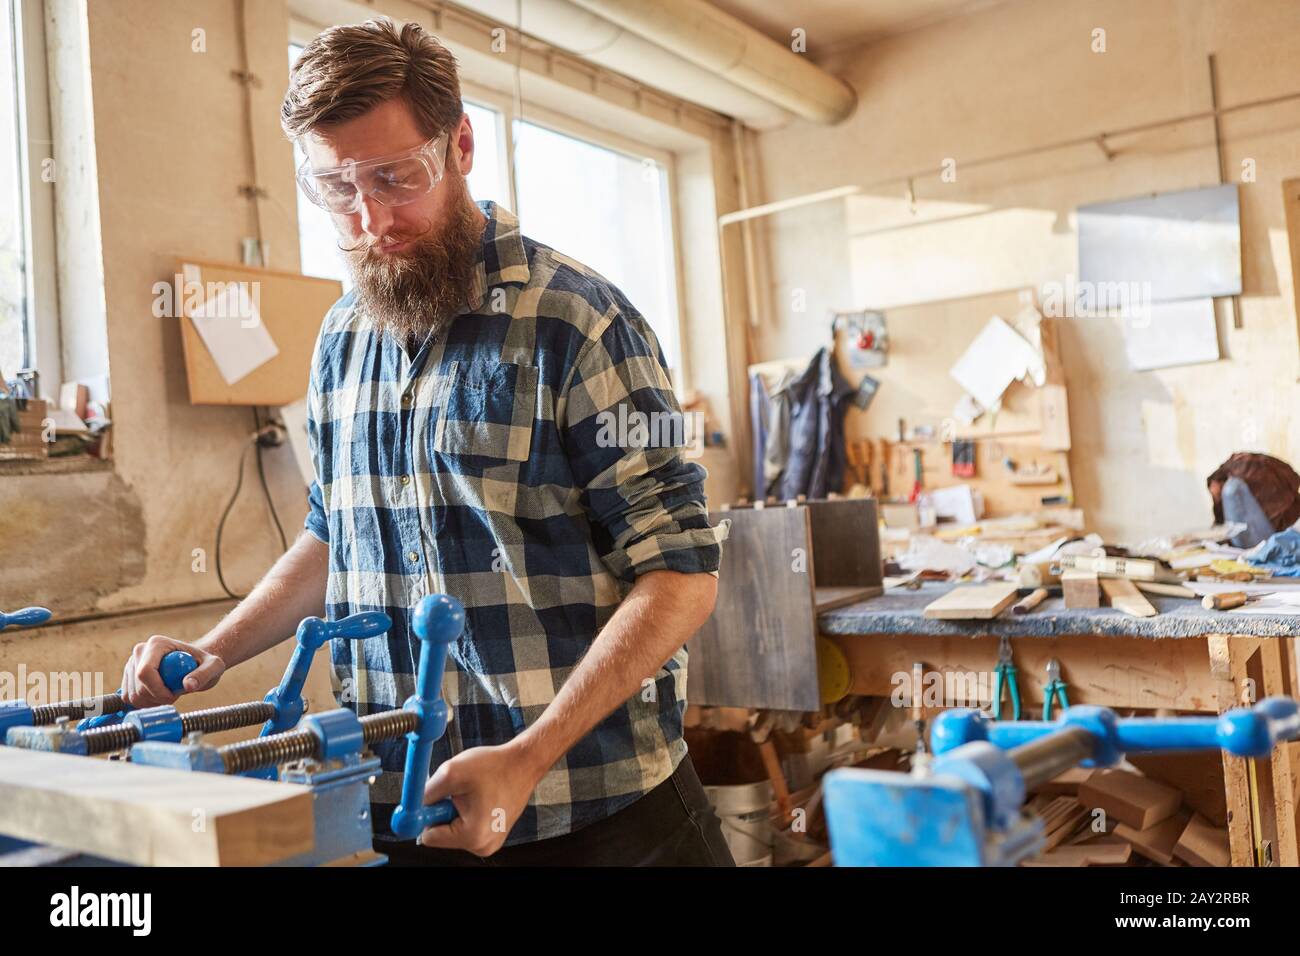 Carpenter travaille comme fabricant de meubles sur une pièce à bois dans la menuiserie Banque D'Images